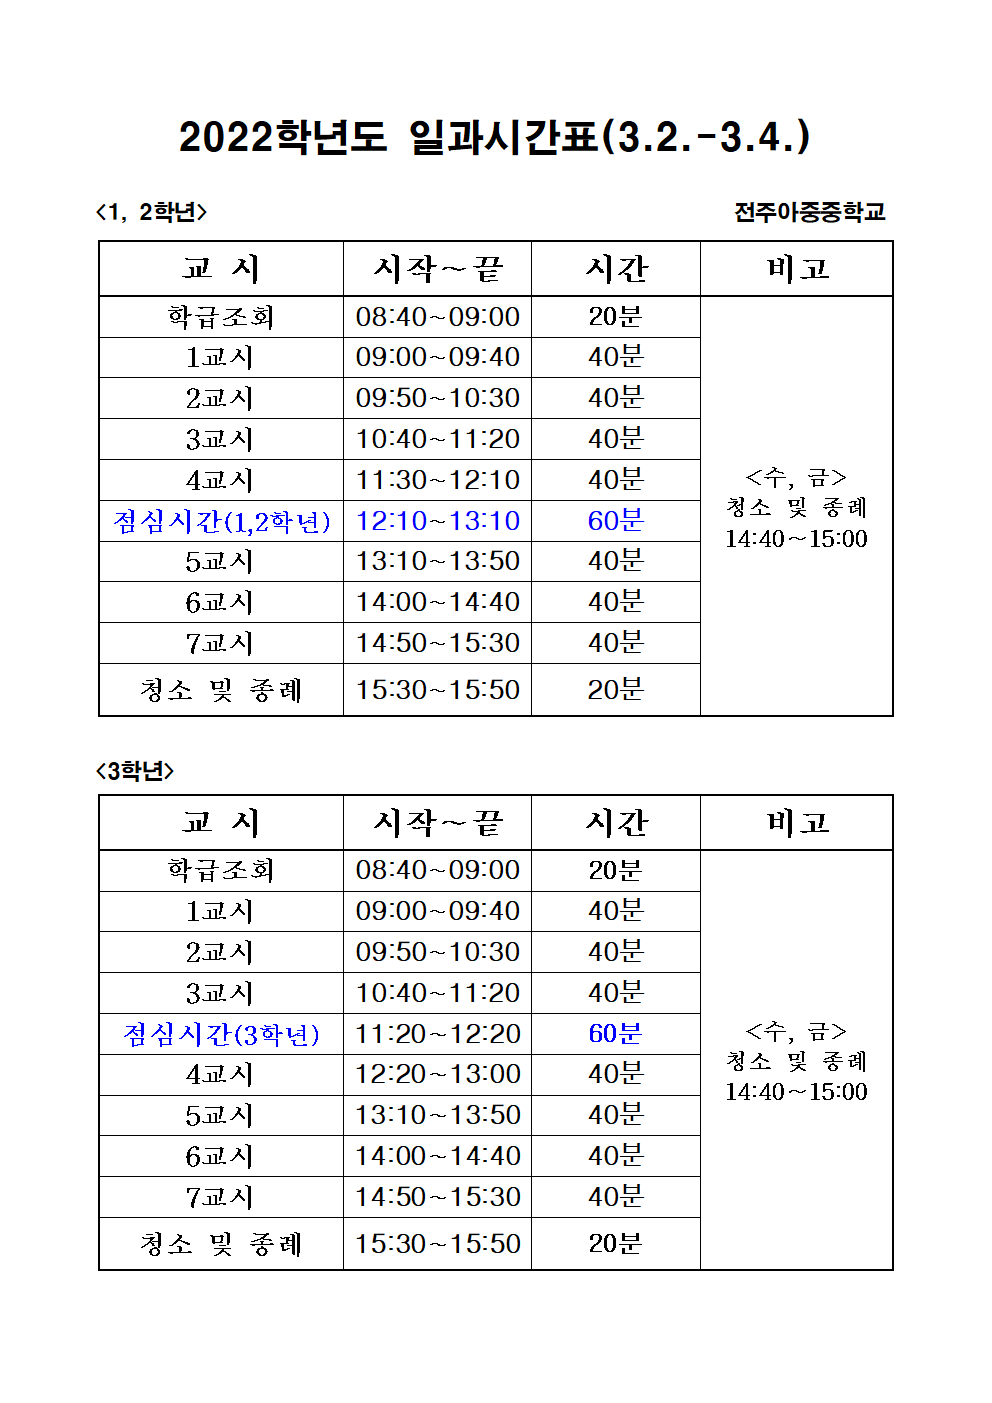 2022학년도 일과시간표(3.2.-3.4.40분 수업)001